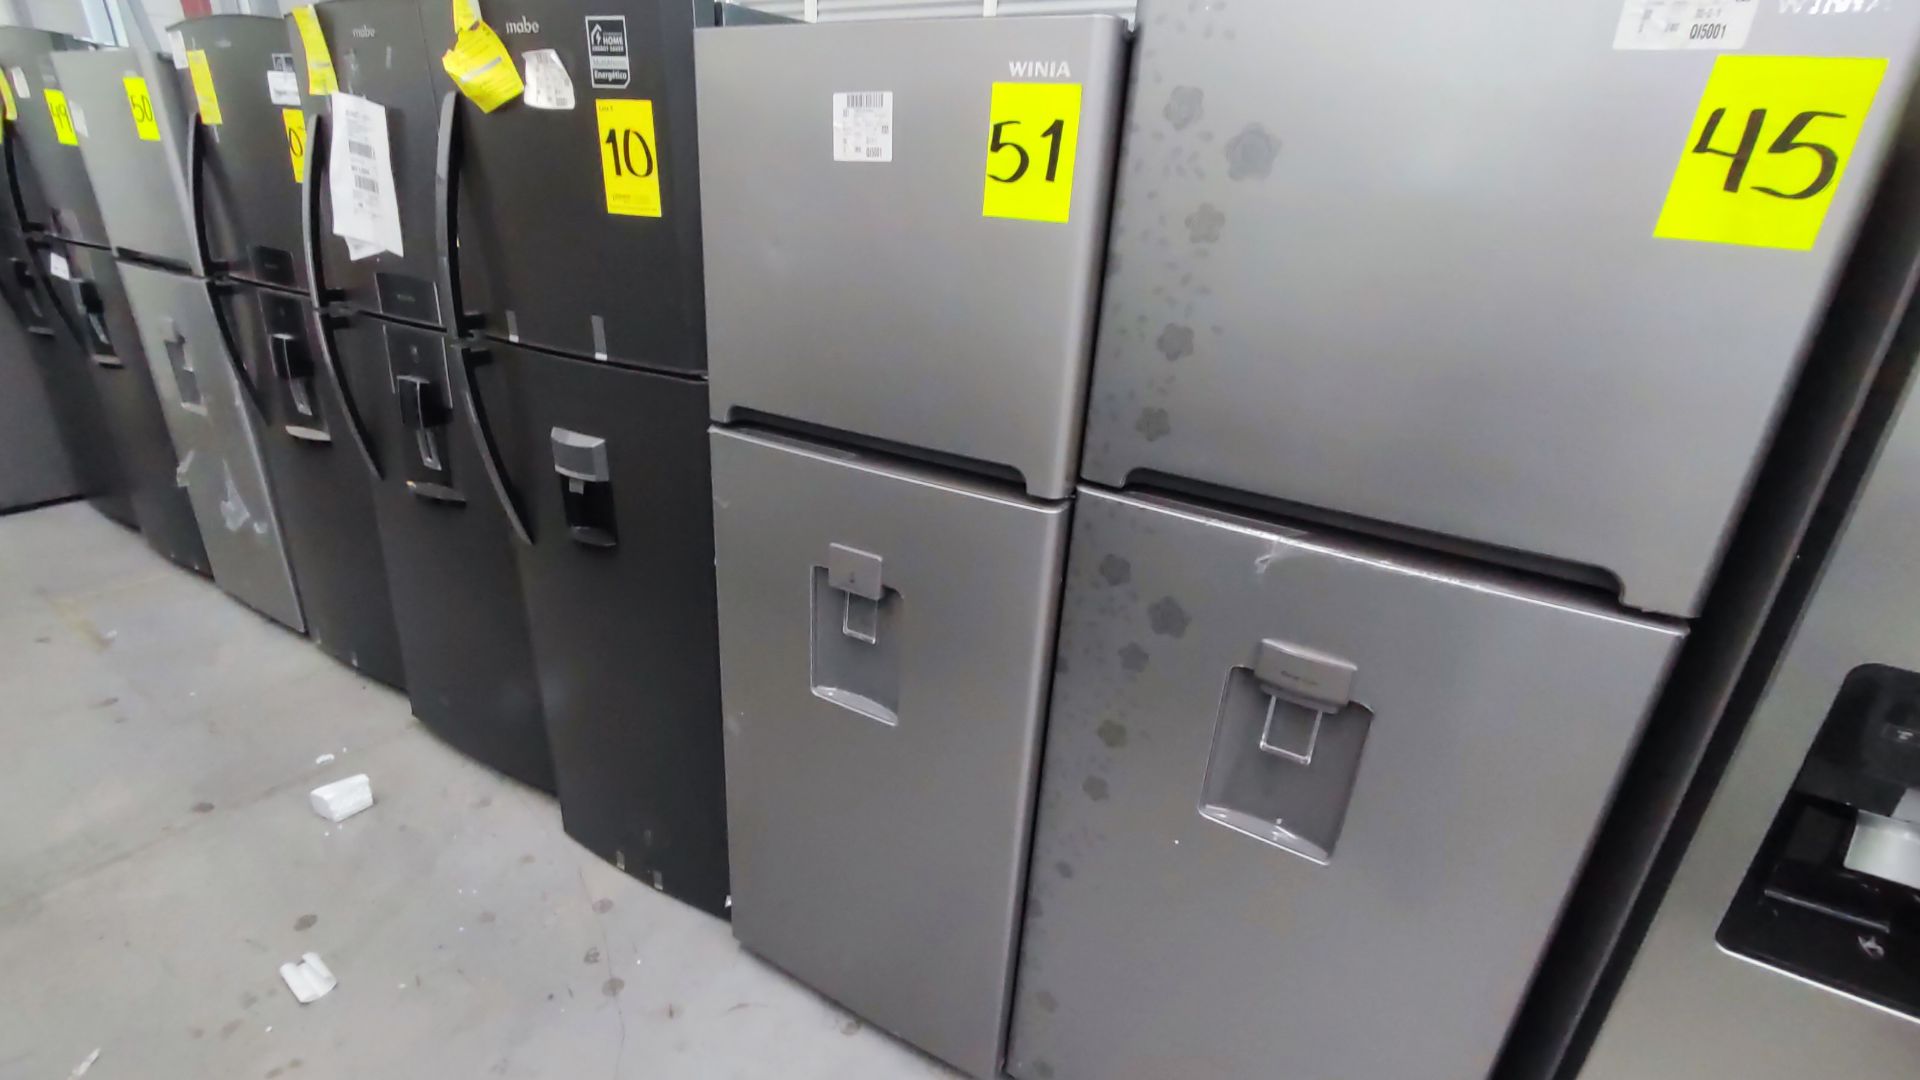 Lote Conformado por 2 Refrigeradores, Contiene; 1 Refrigerador con Dispensador de Agua Marca WINIA, - Image 2 of 22